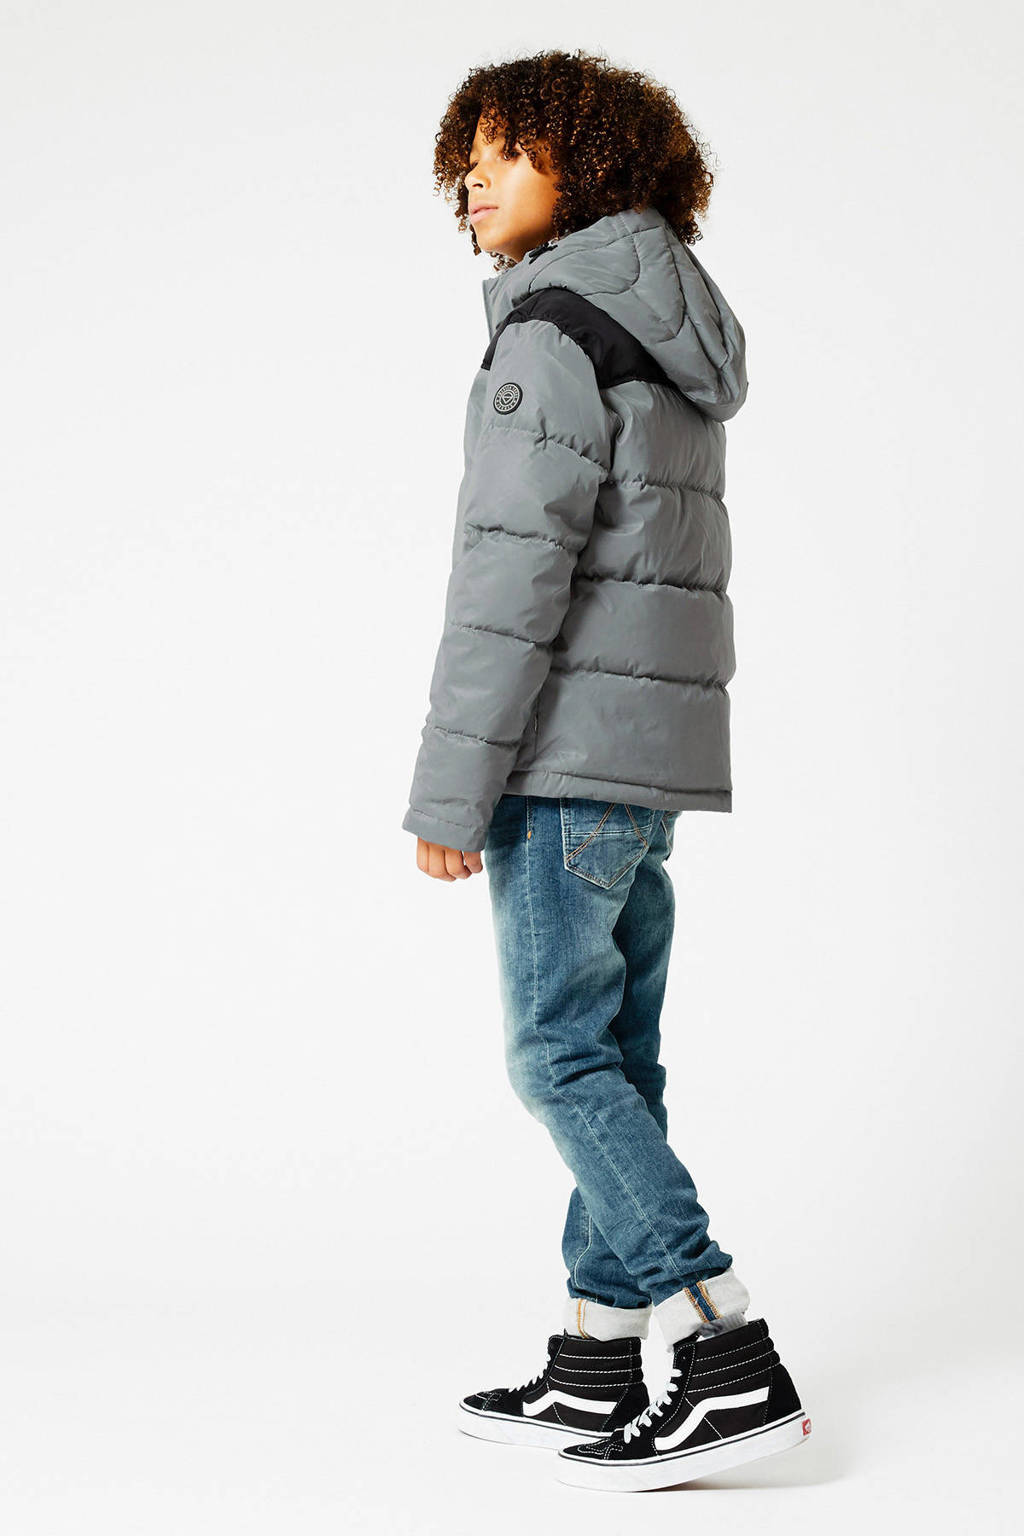 Grijze jongens America Today Junior gewatteerde winterjas van nylon met lange mouwen, capuchon en ritssluiting